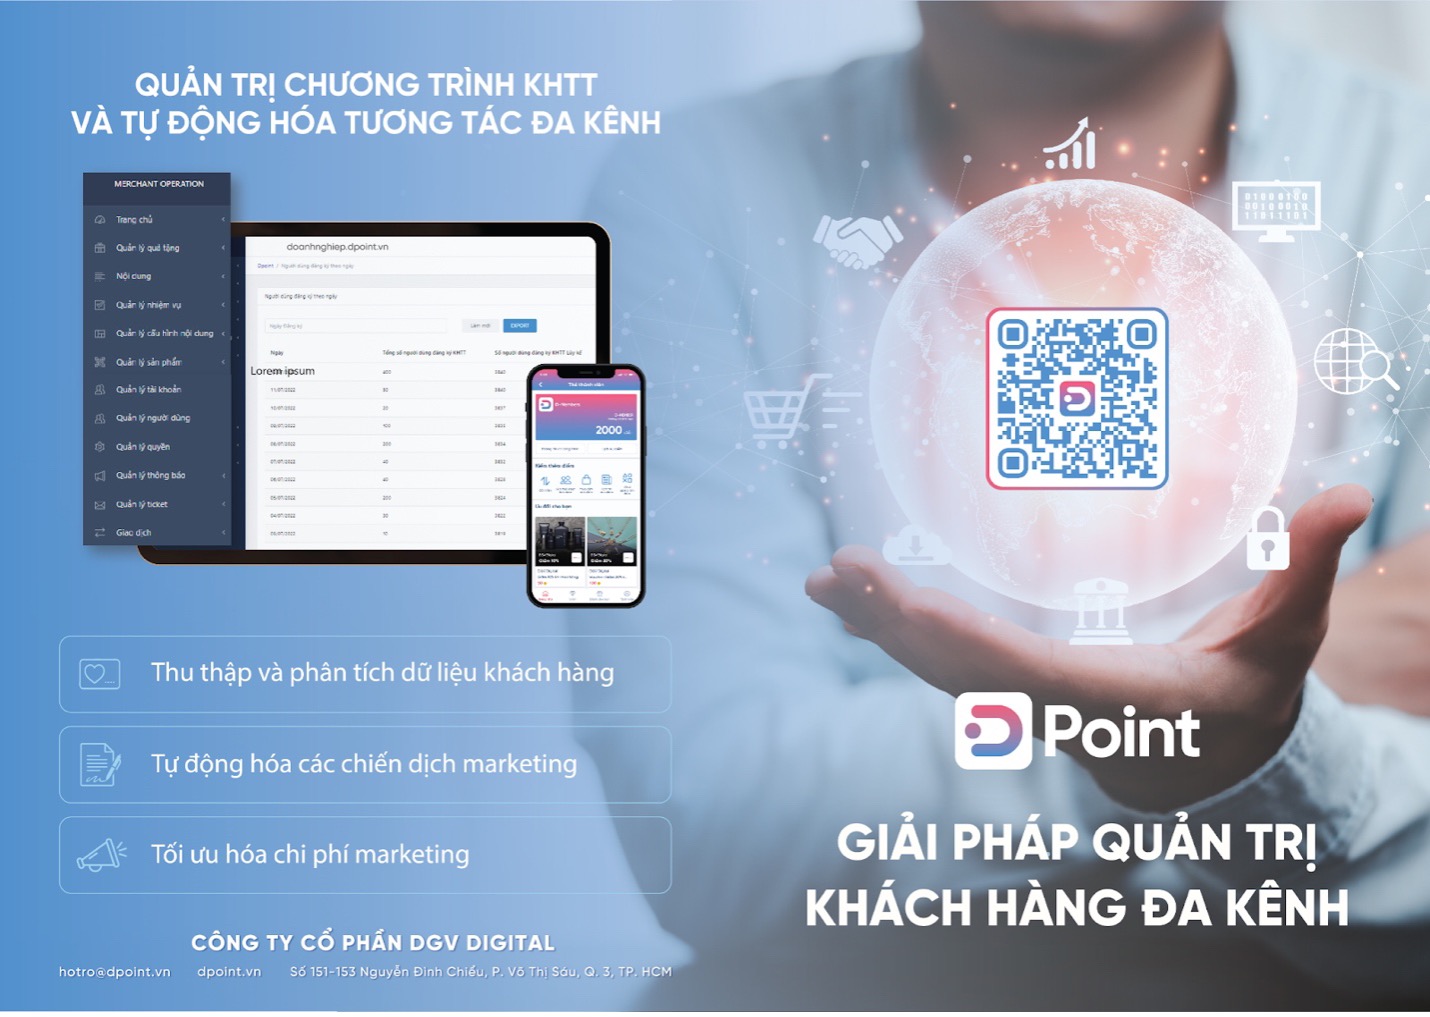 DPoint và mục tiêu nâng cao trải nghiệm khách hàng cùng doanh nghiệp Việt